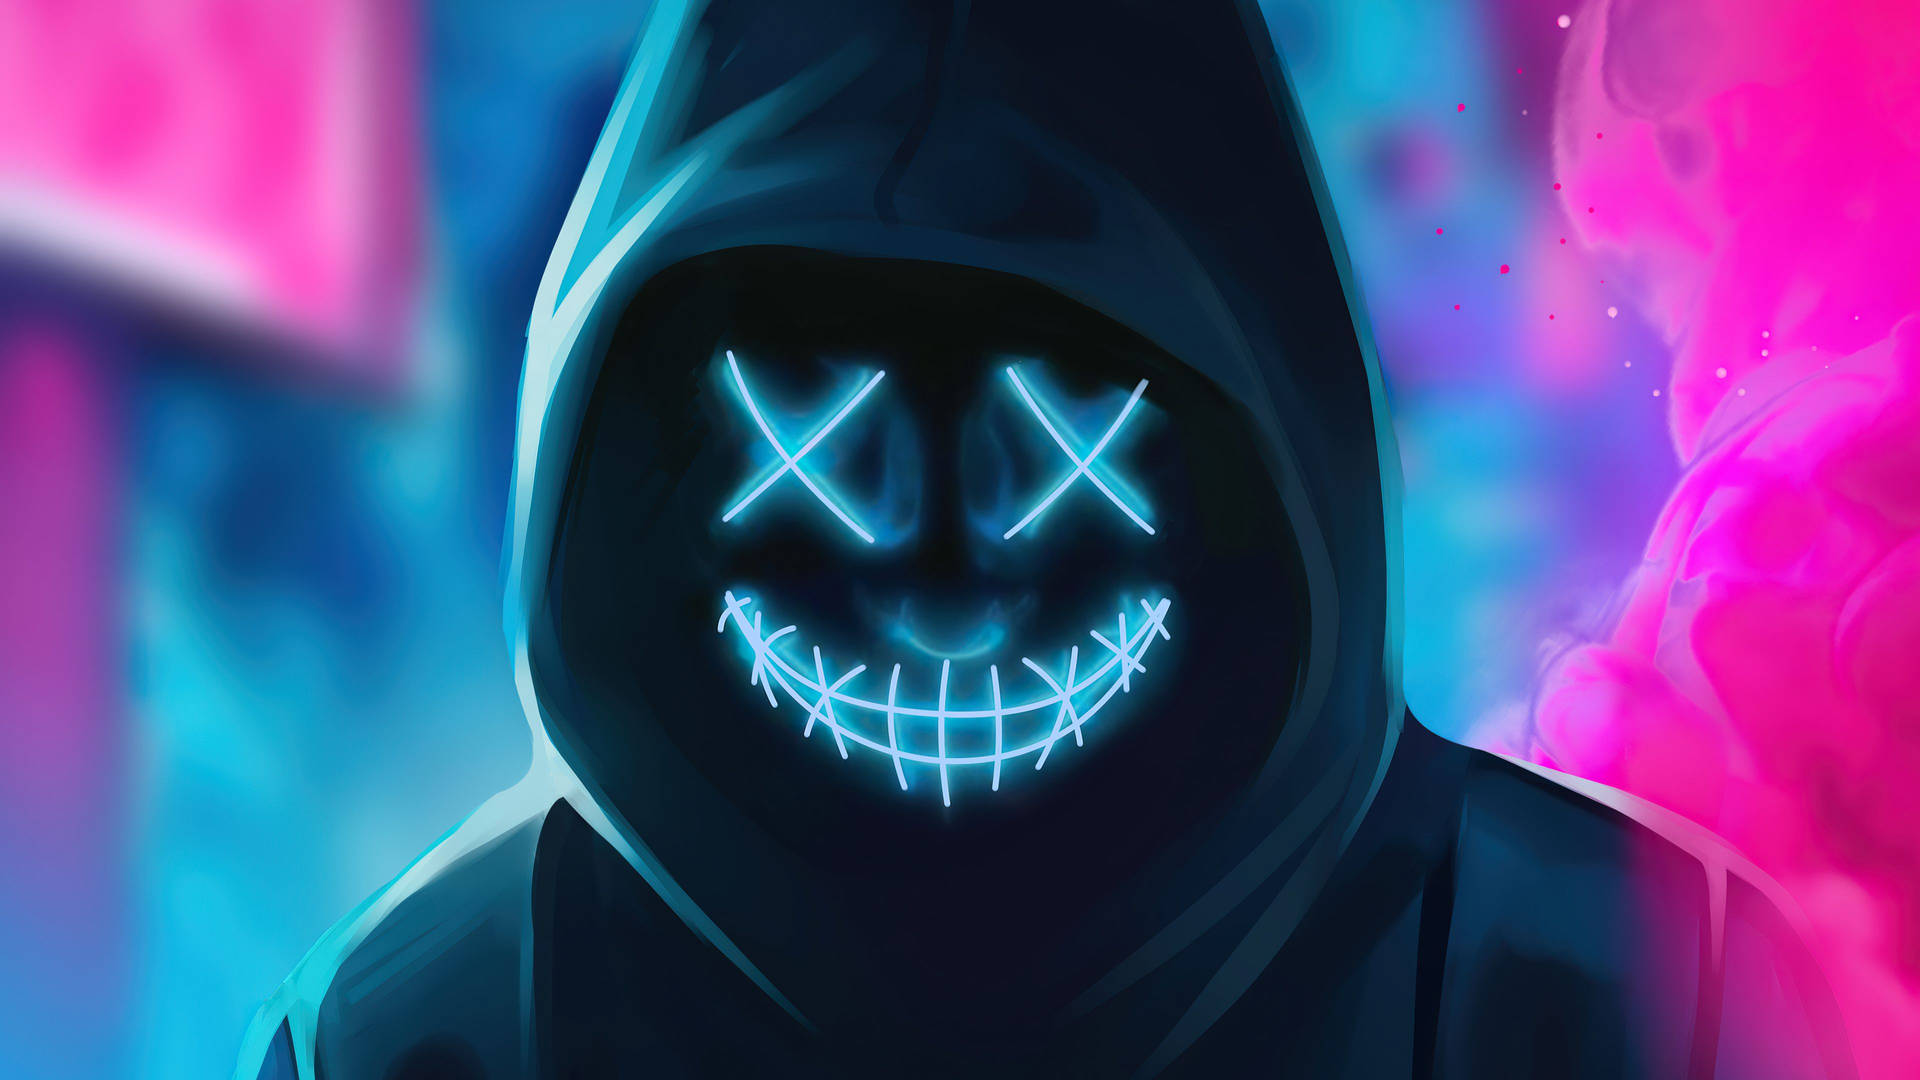 Hooded Neon Smile Wallpaper